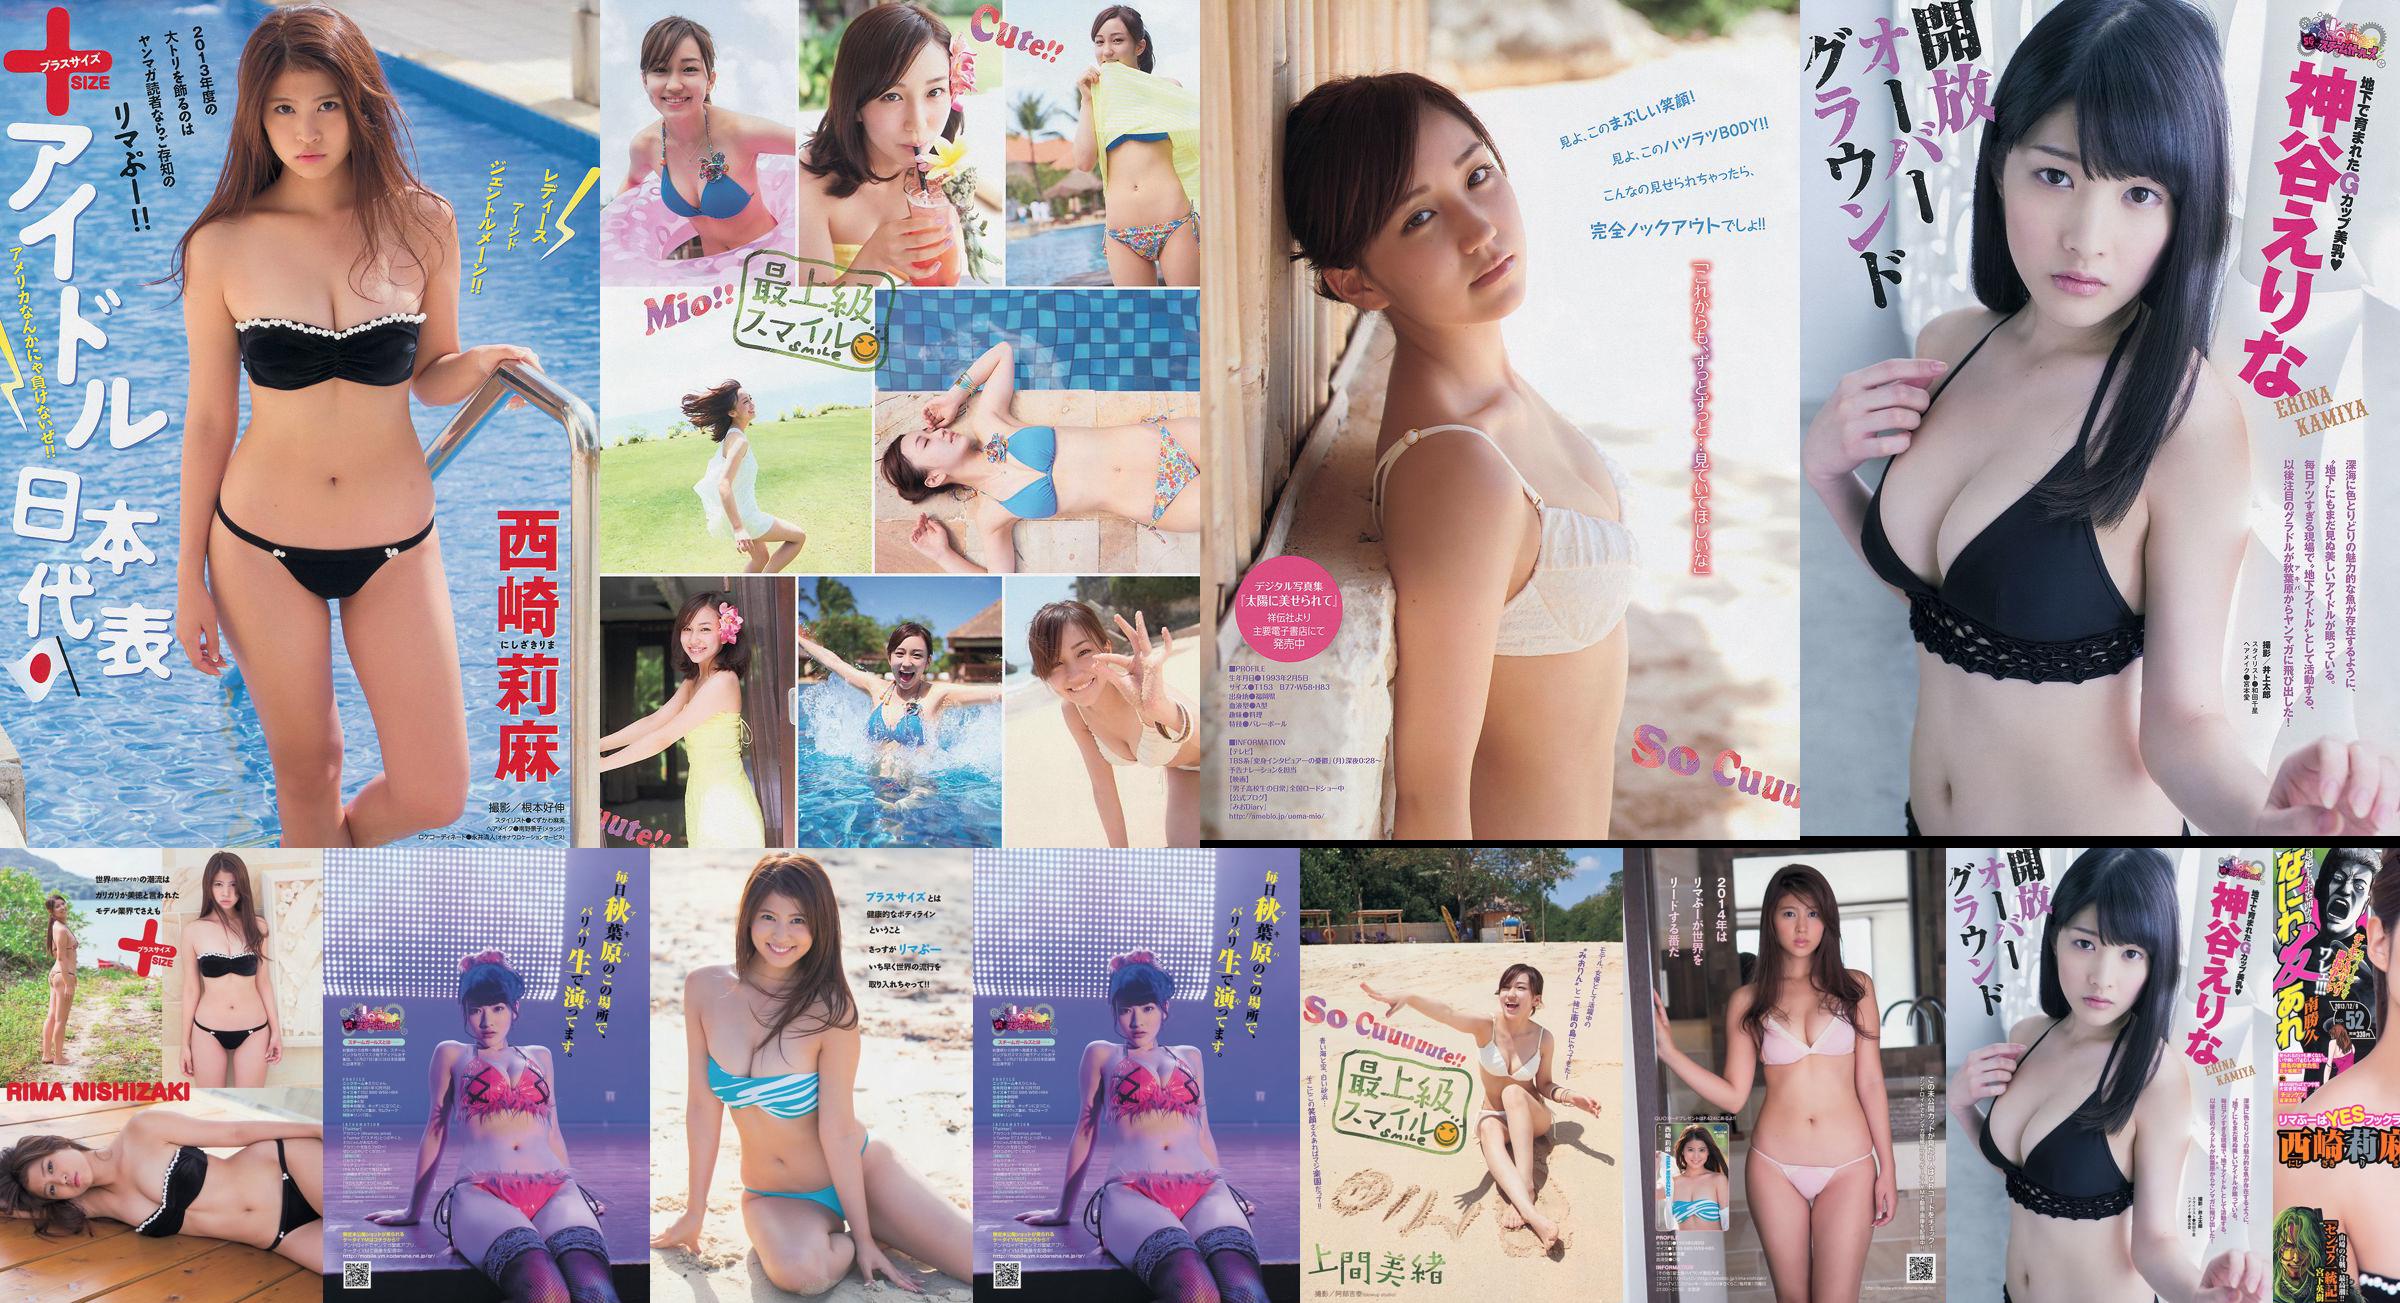 [Magazyn Młodych] Rima Nishizaki Mio Uema Erina Kamiya 2013 No.52 Photo Moshi No.d79e49 Strona 1